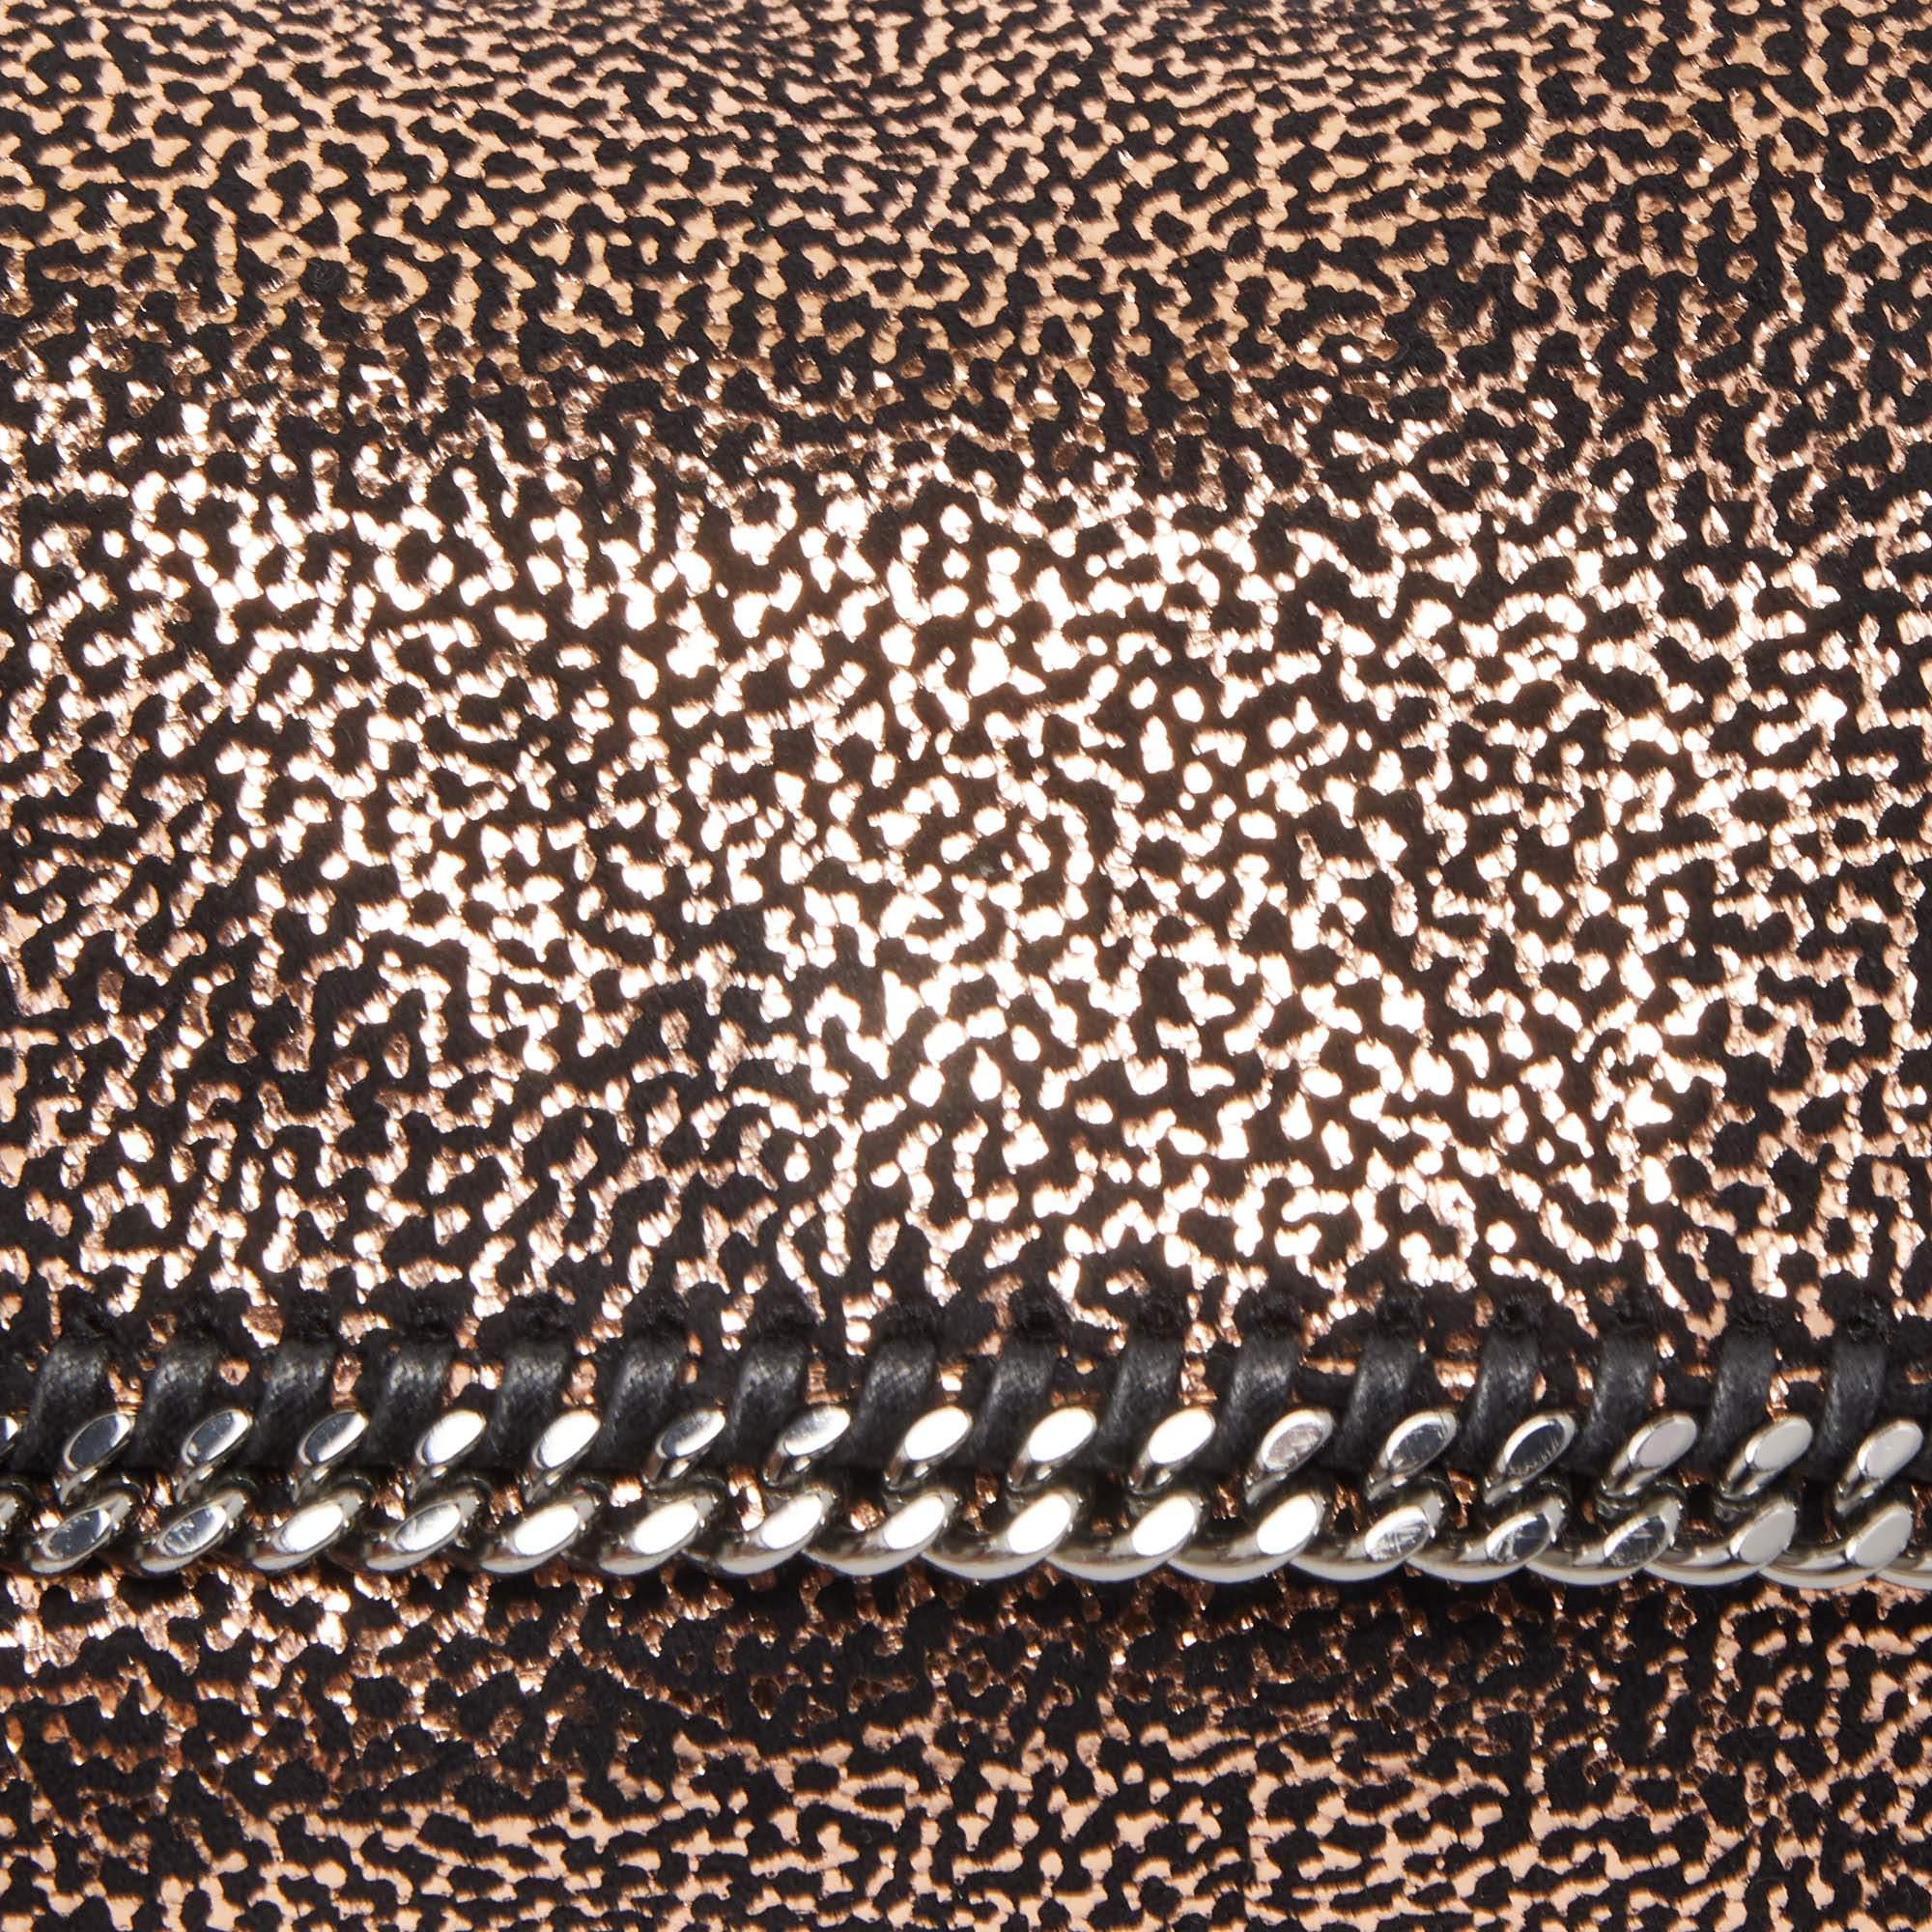 Stella McCartney Black/Rose Gold Faux Leather Falabella Flap Shoulder Bag 4